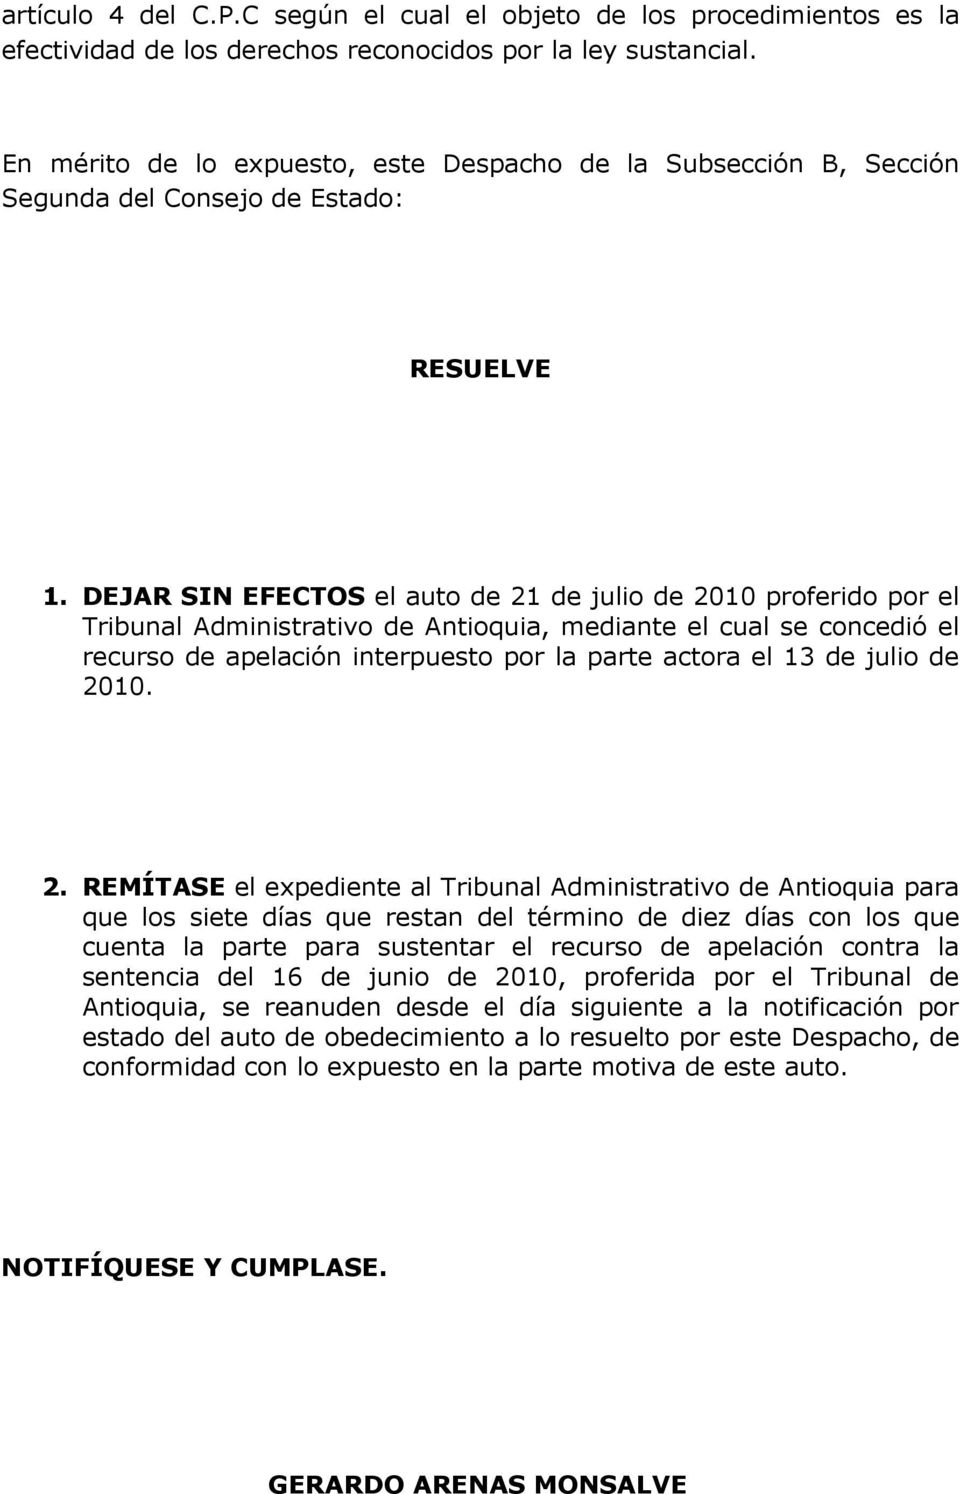 DEJAR SIN EFECTOS el auto de 21 de julio de 2010 proferido por el Tribunal Administrativo de Antioquia, mediante el cual se concedió el recurso de apelación interpuesto por la parte actora el 13 de